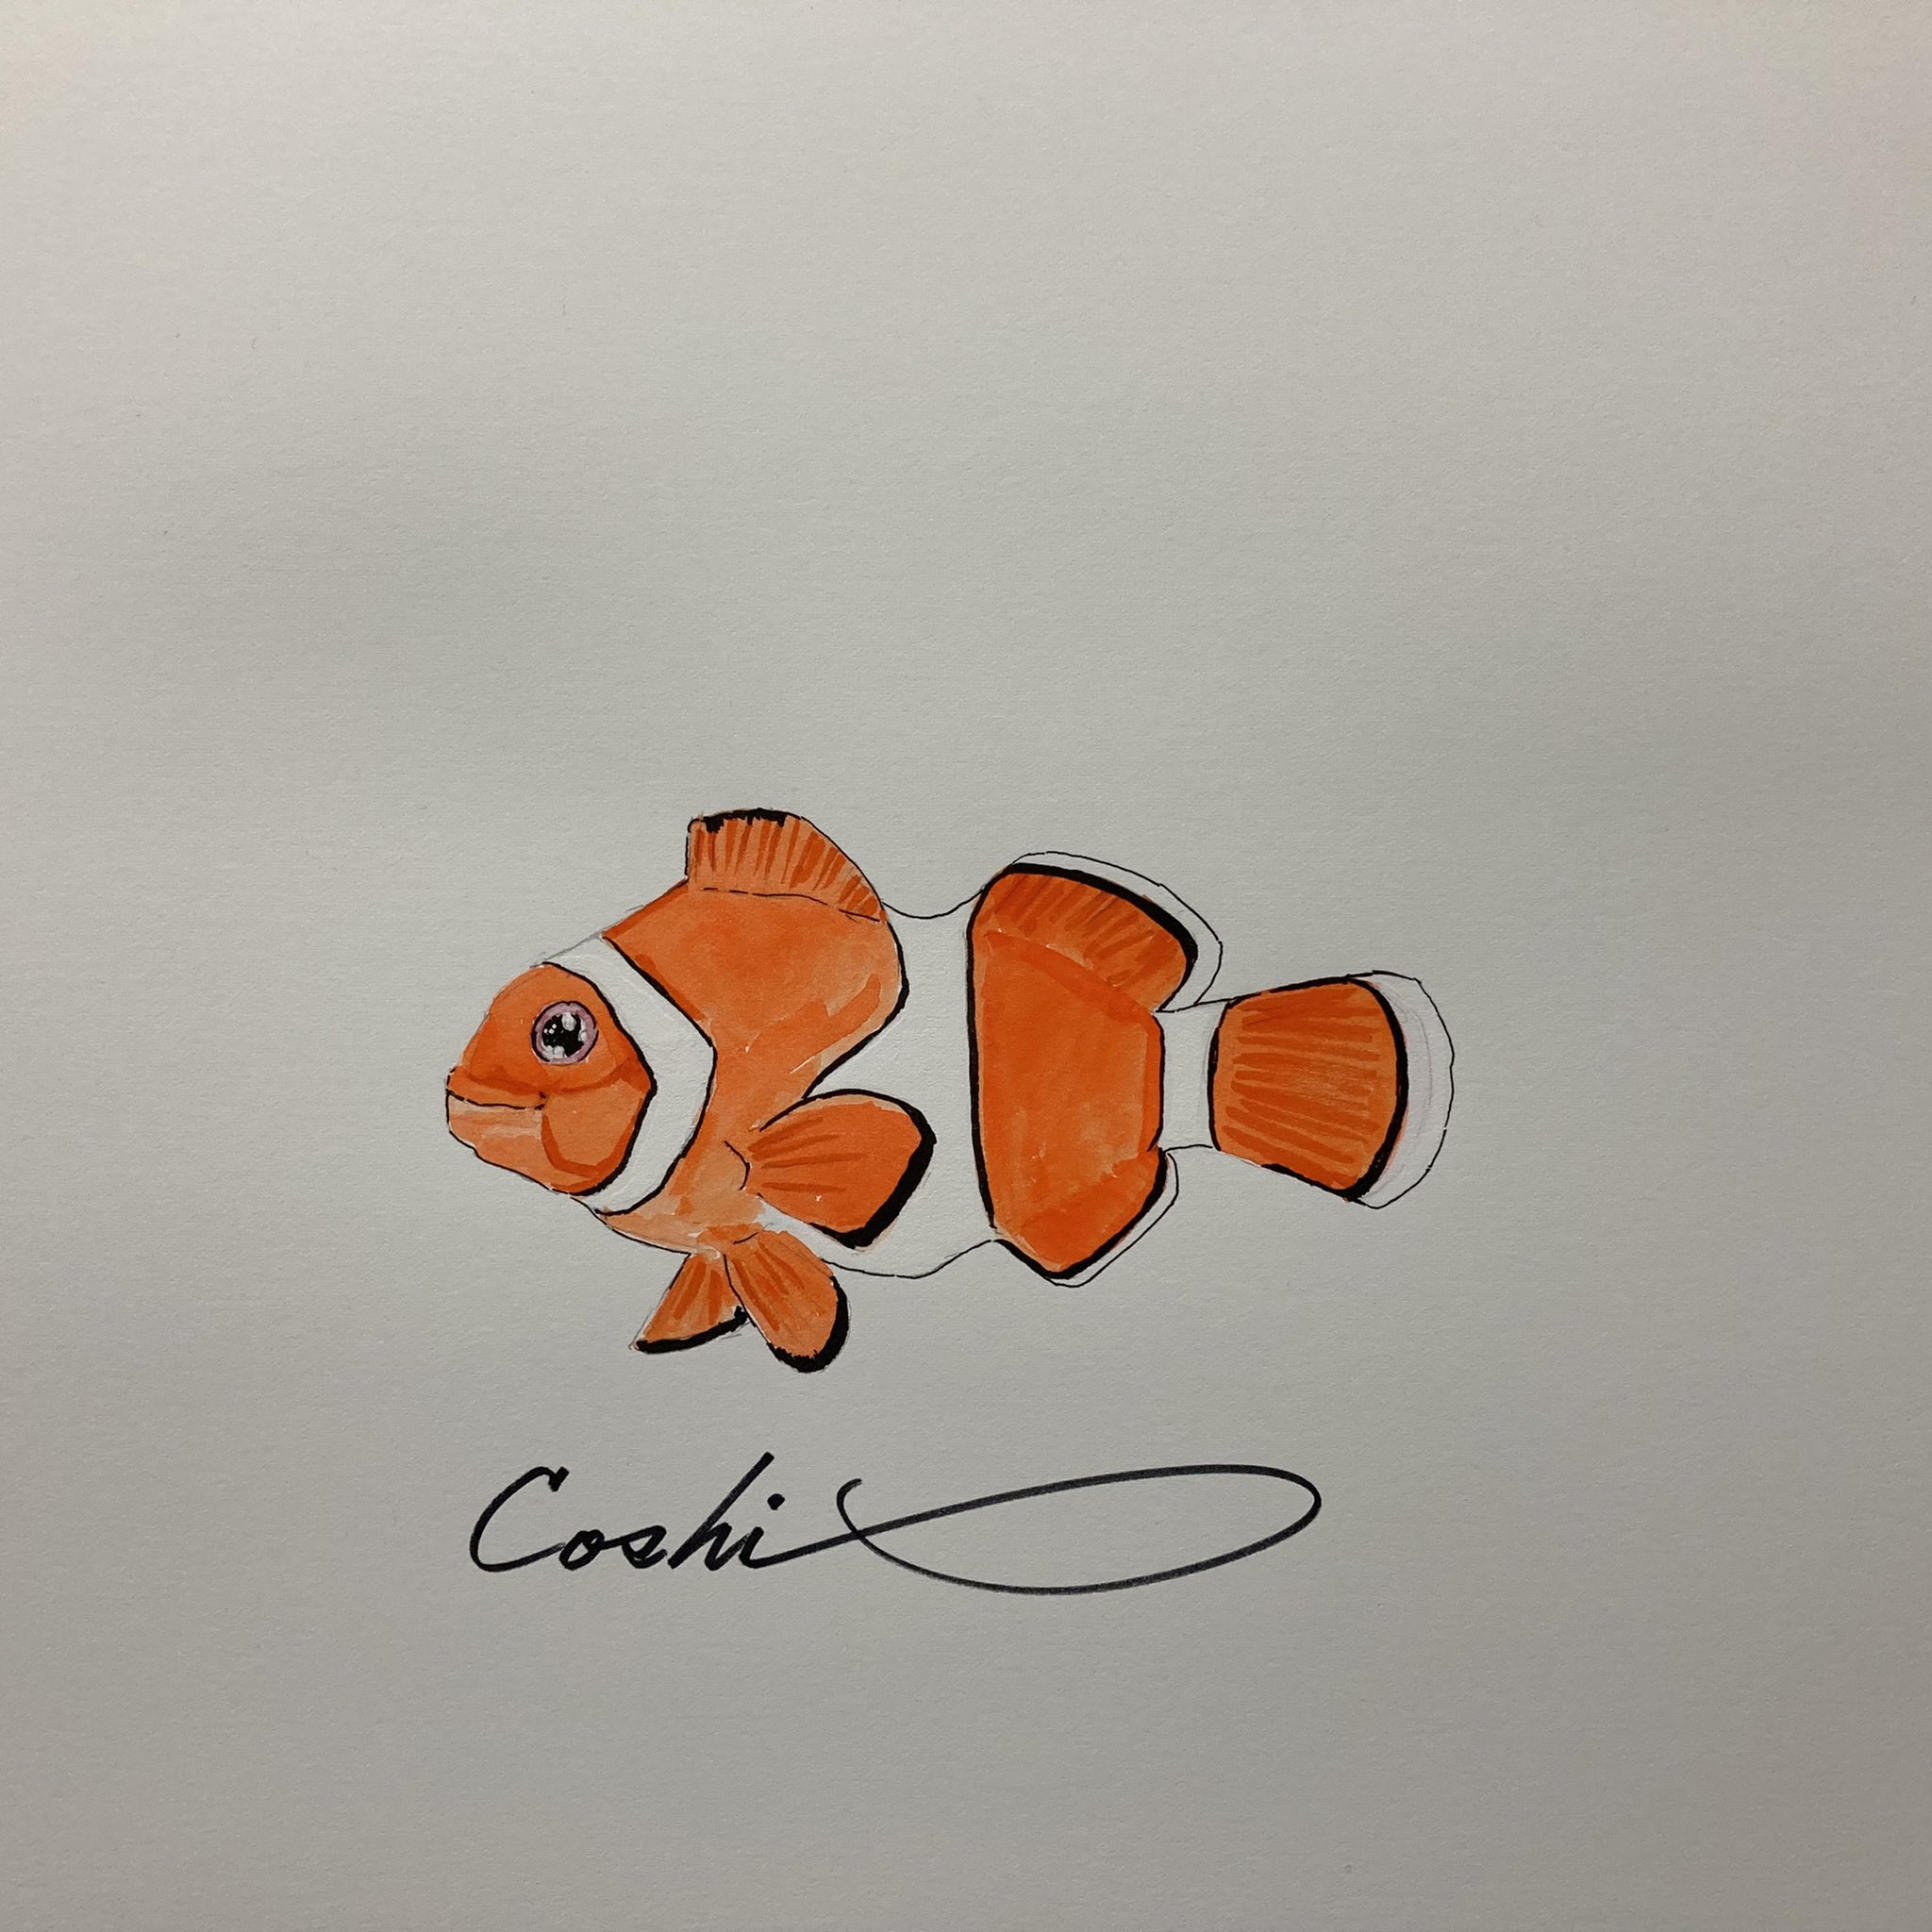 Coshi Wylde カクレクマノミを描いてみました Art Fineart Drawing Watercolorpaintig Clownfish カクレクマノミ スズキ目 スズメダイ科 海水魚 熱帯魚 アクアリウム Fish 魚 絵 Illustrator Illustrate イラスト イラスト好きな人と